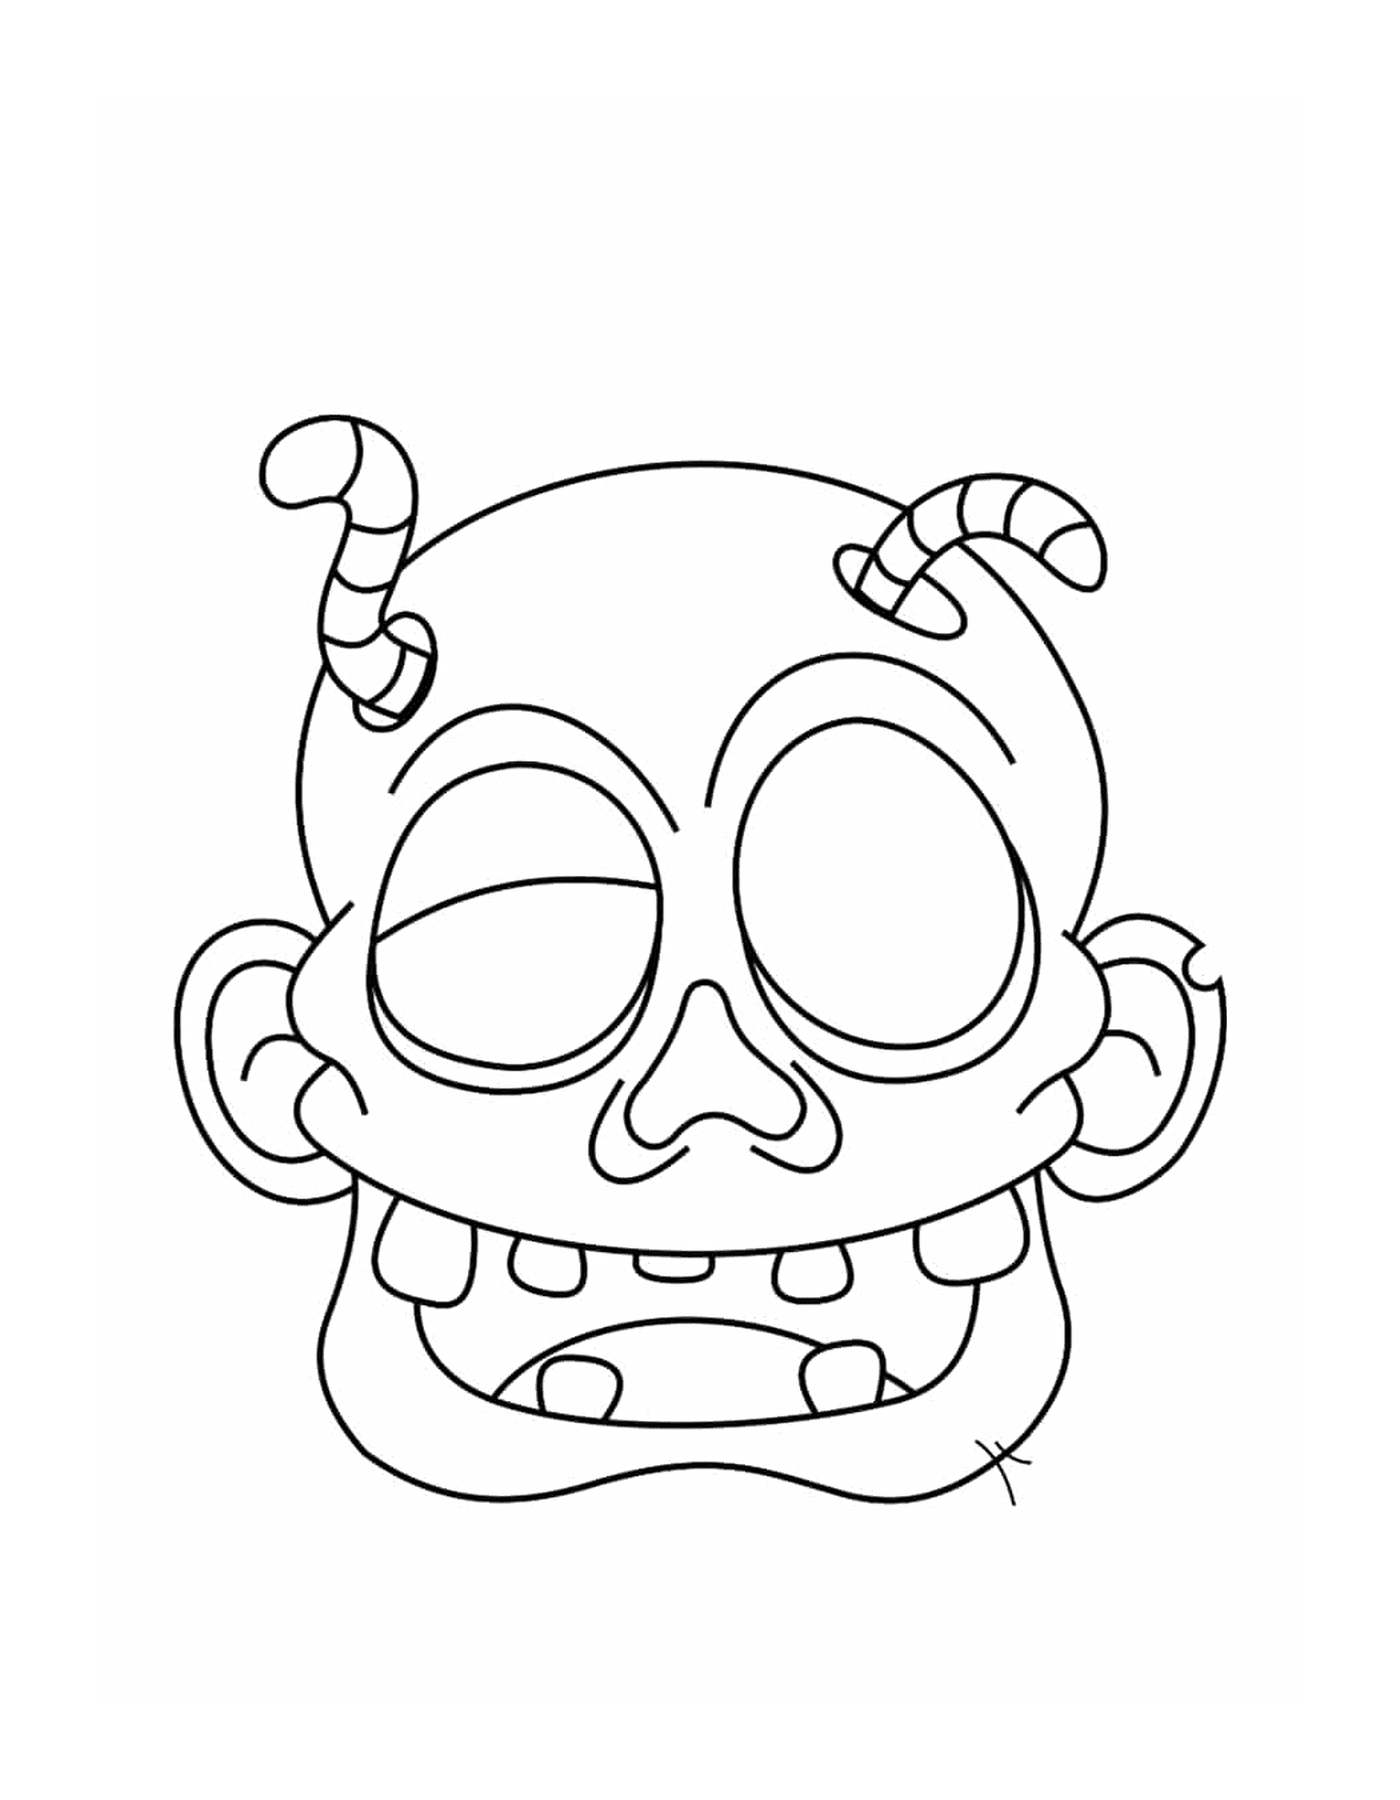  A zombie head in cartoon 